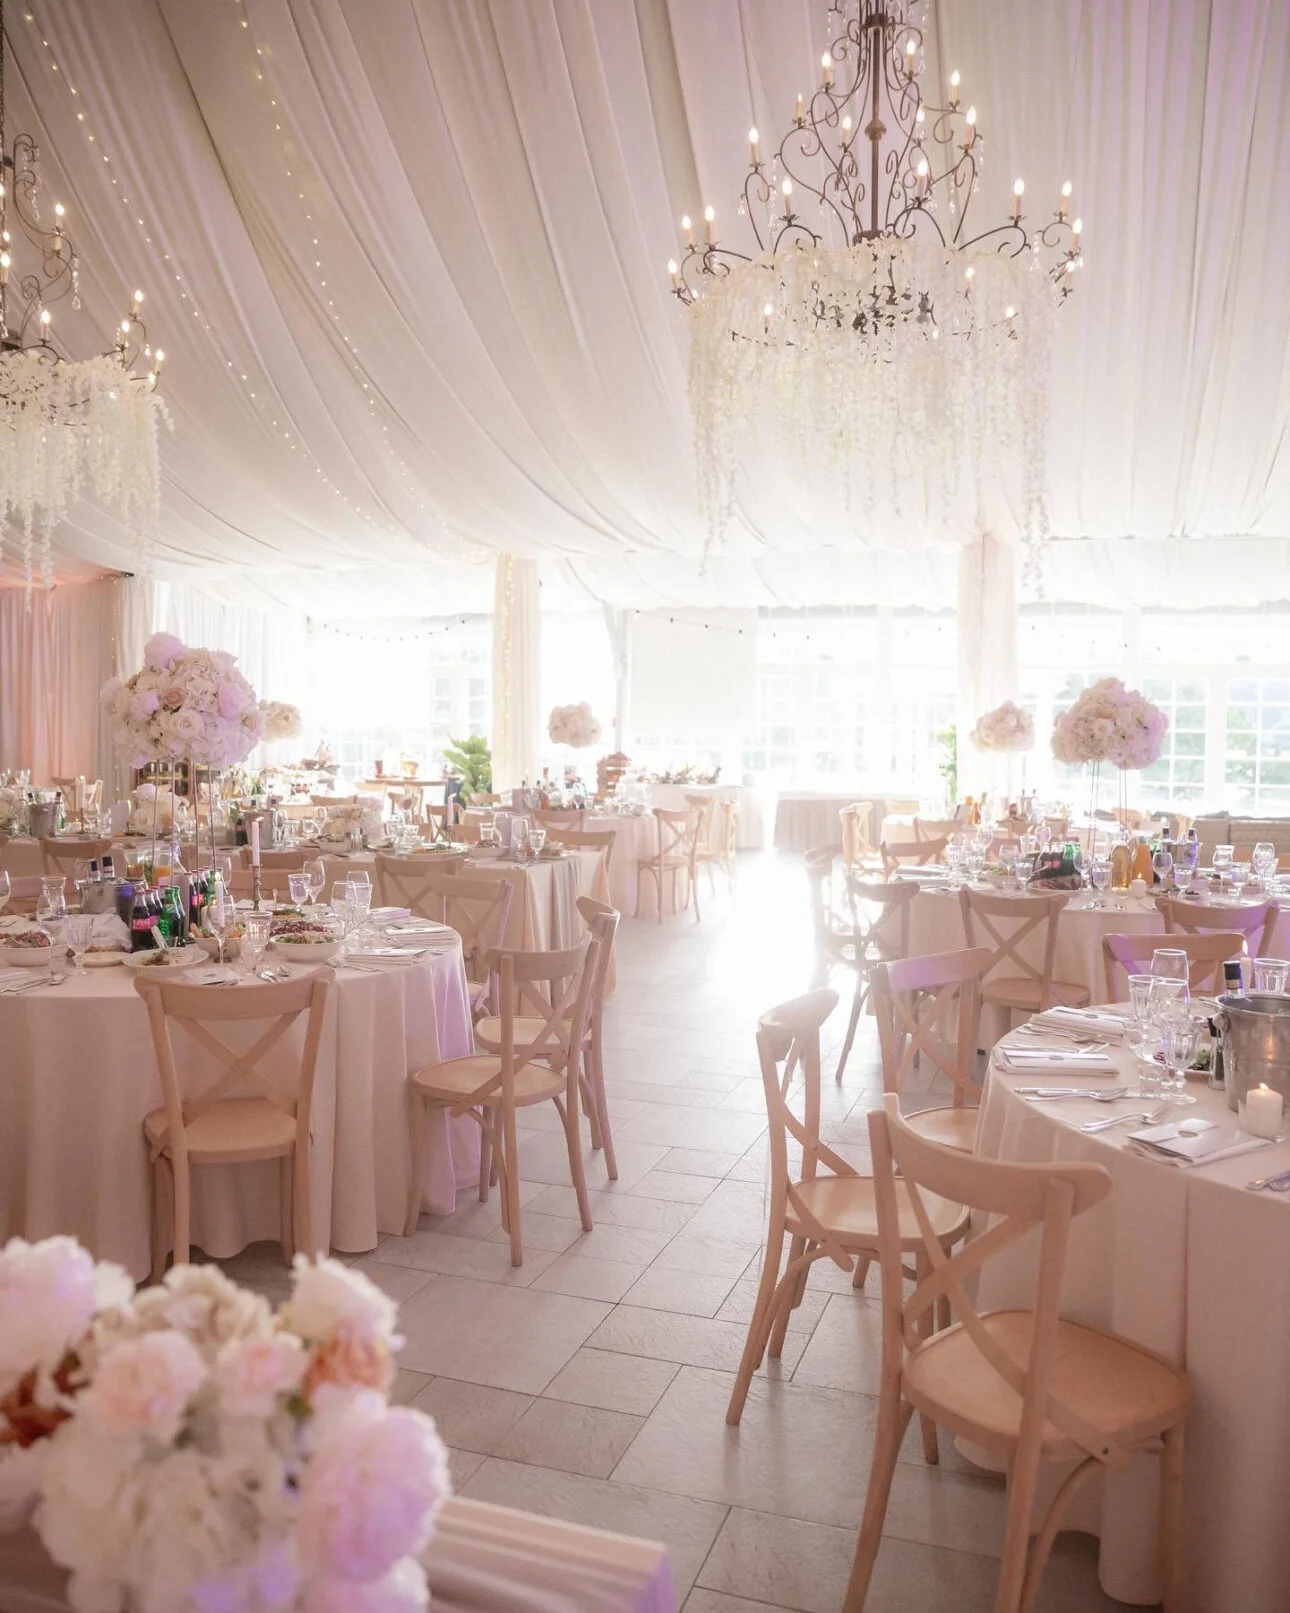 dekoracja sali weselnej - kwiaty na żyrandolach i stołach